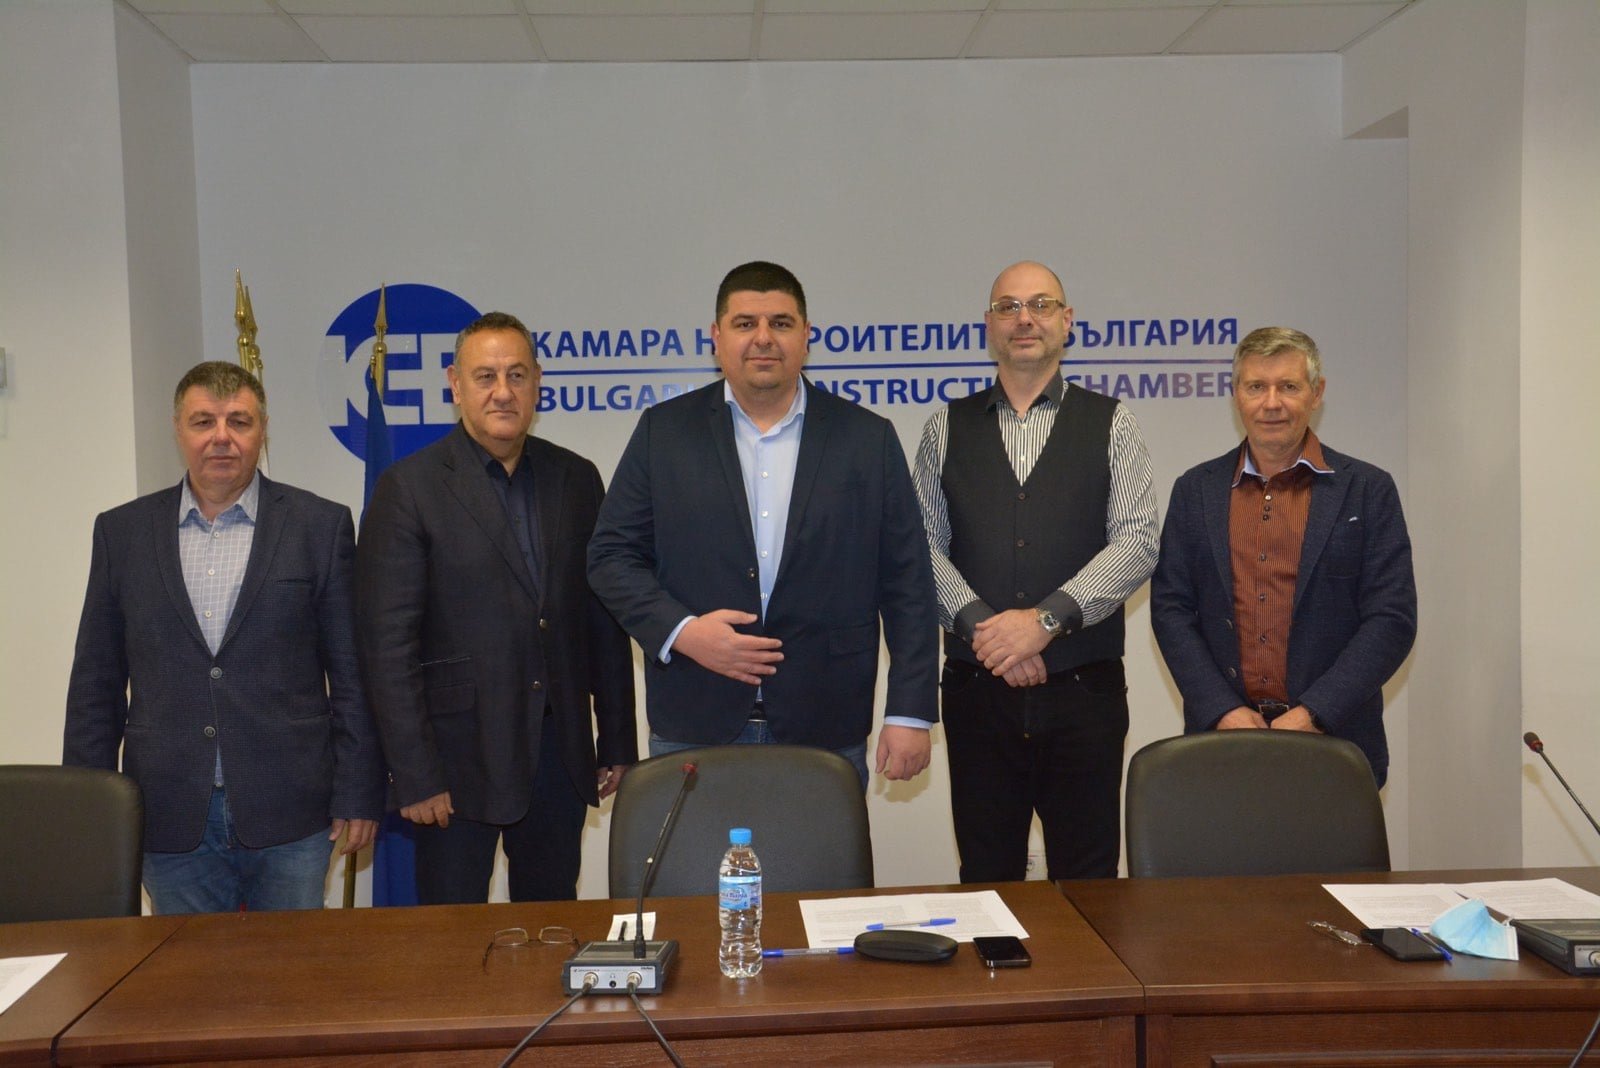 Демократична България и Камарата на строителите в България ще си